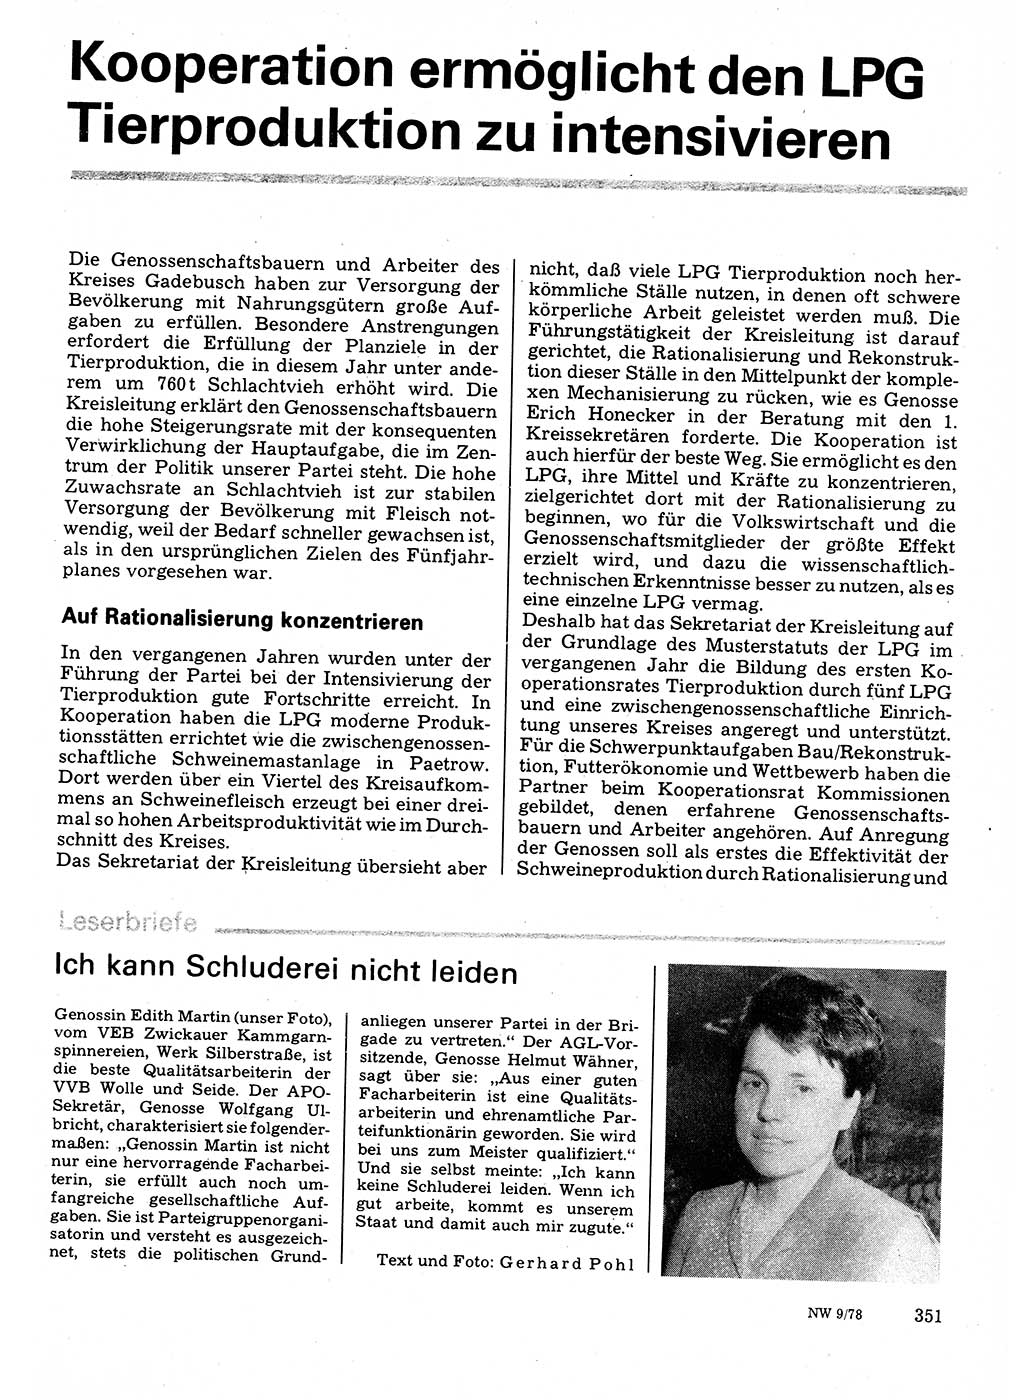 Neuer Weg (NW), Organ des Zentralkomitees (ZK) der SED (Sozialistische Einheitspartei Deutschlands) für Fragen des Parteilebens, 33. Jahrgang [Deutsche Demokratische Republik (DDR)] 1978, Seite 351 (NW ZK SED DDR 1978, S. 351)